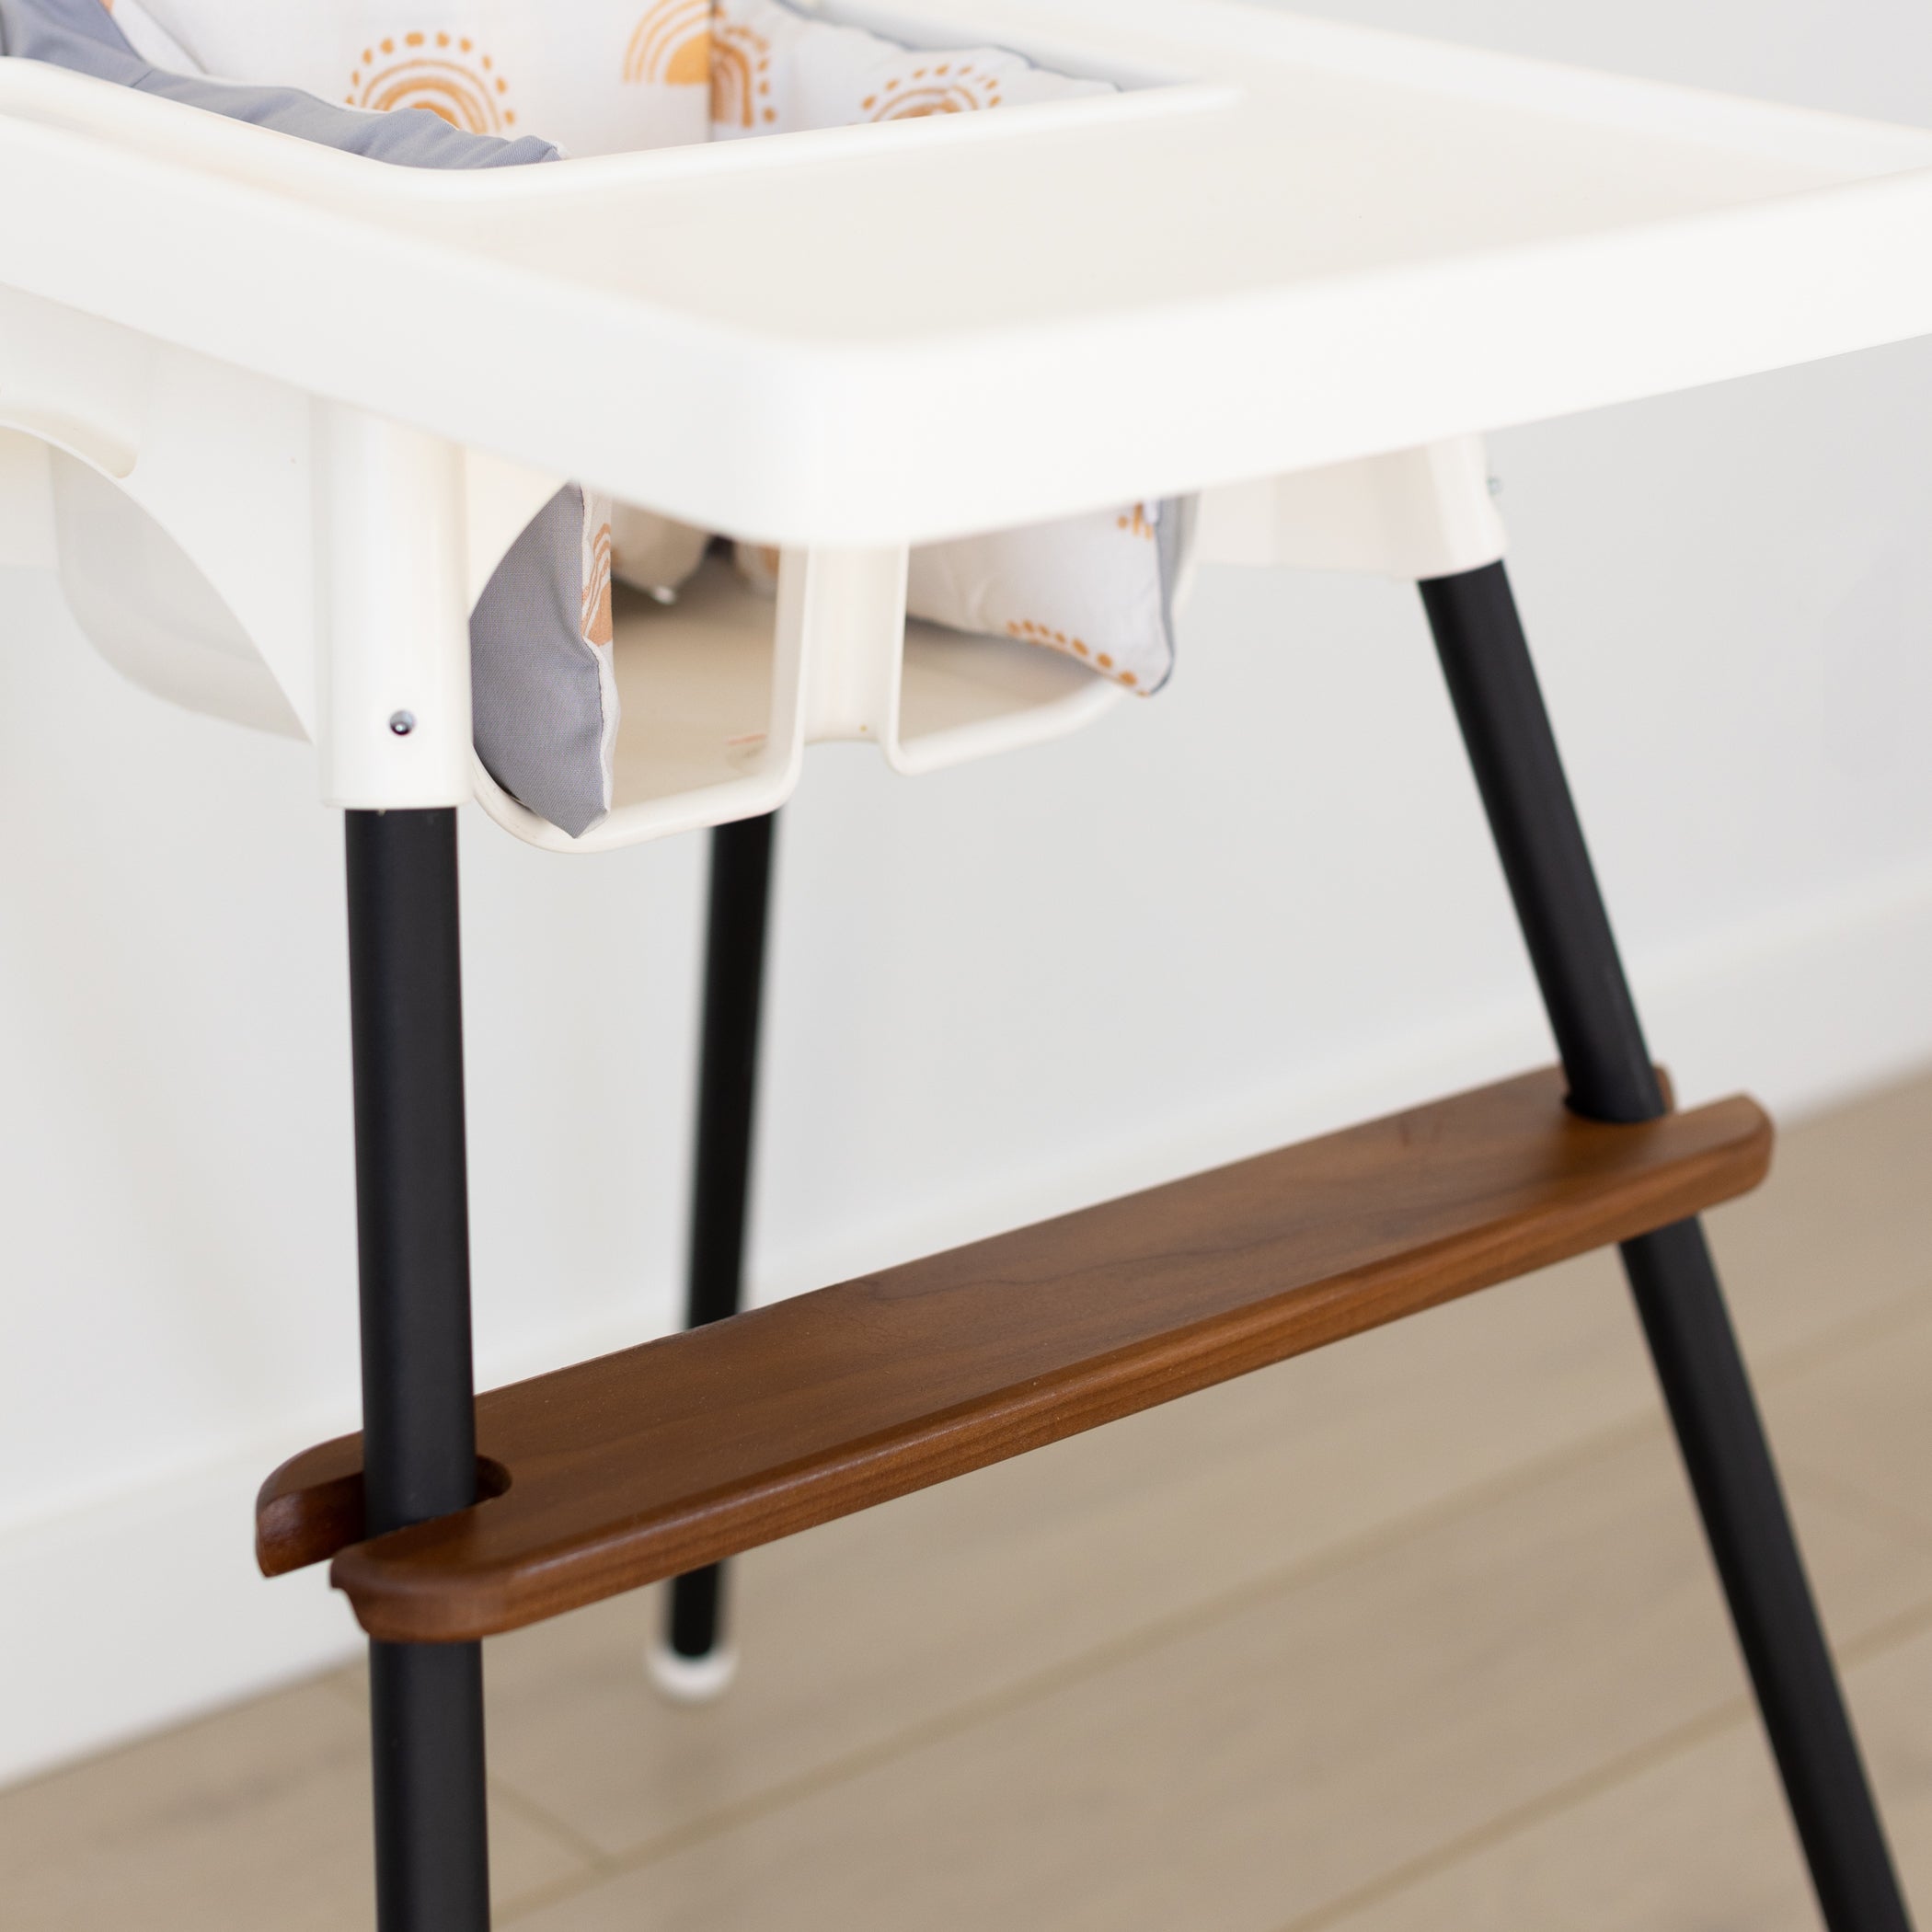 IKEA Antilop Foot Rest - Maple – Little Joy Co.